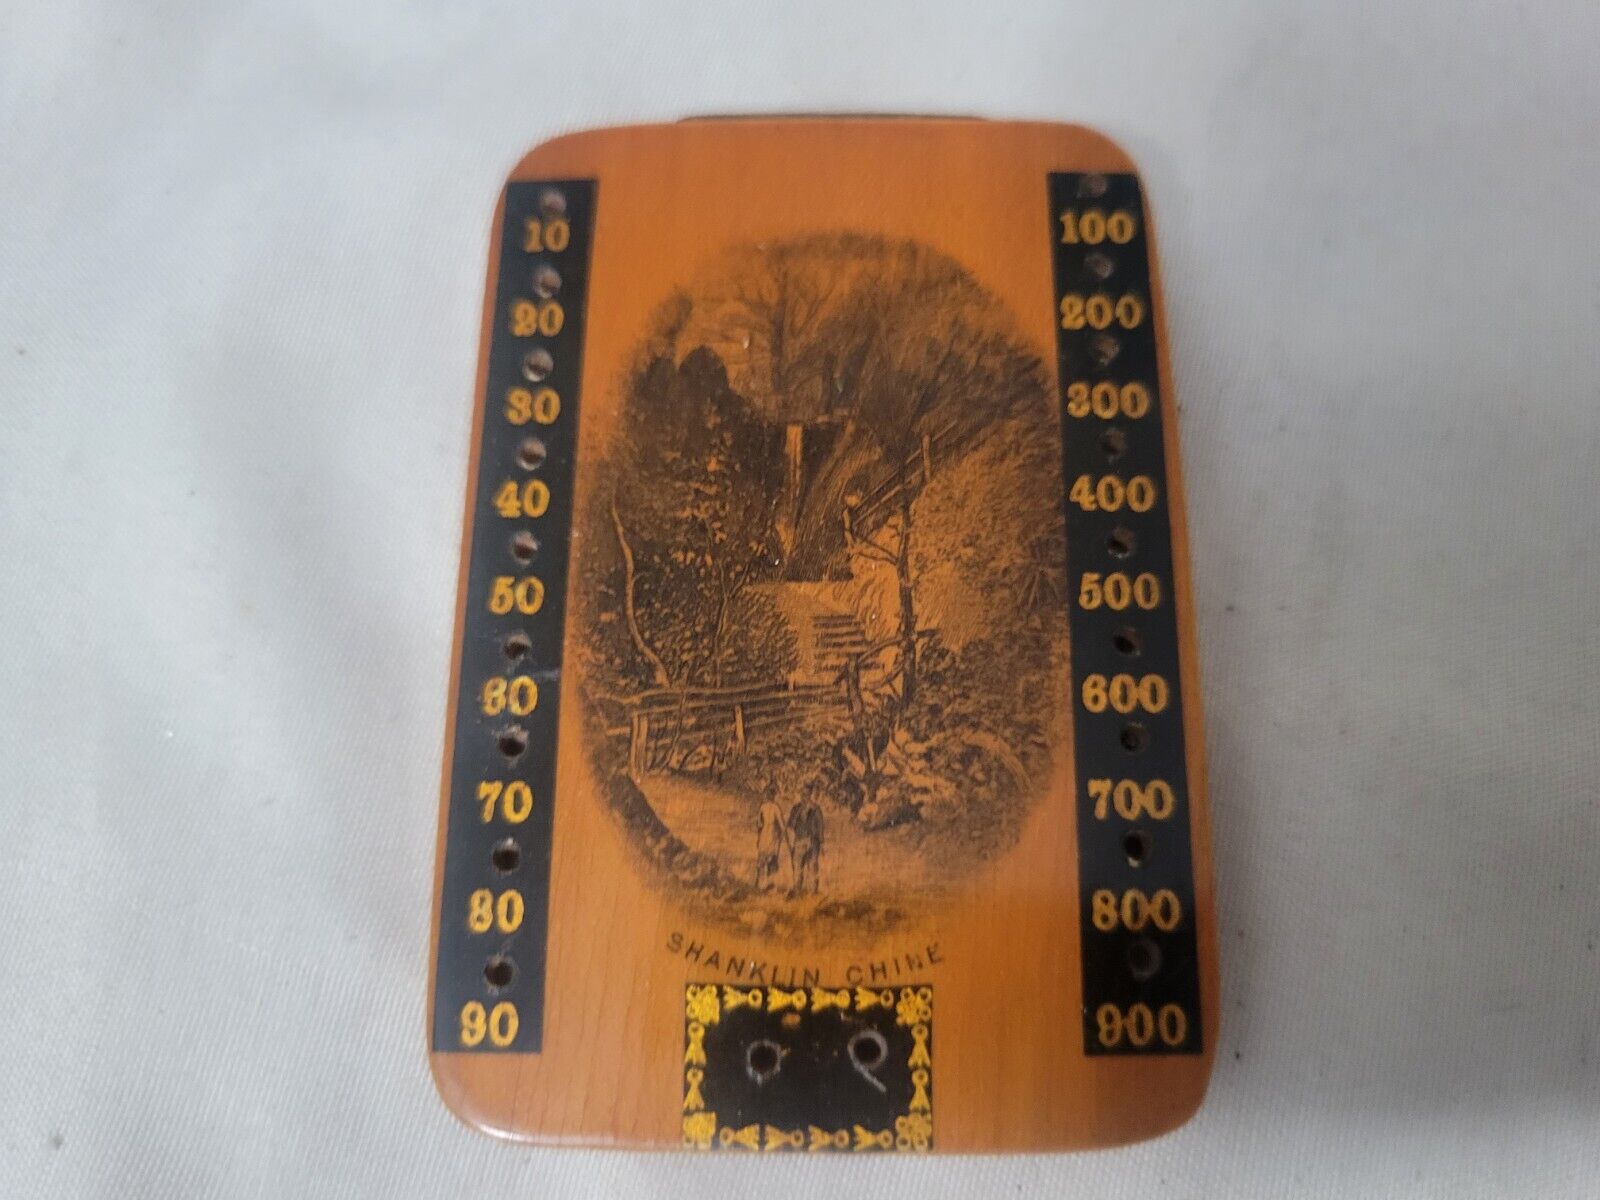    Rare Antique Mauchline Ware BezIque Board 2 Pegs 2x3in ca 1880 Shanklin Chine